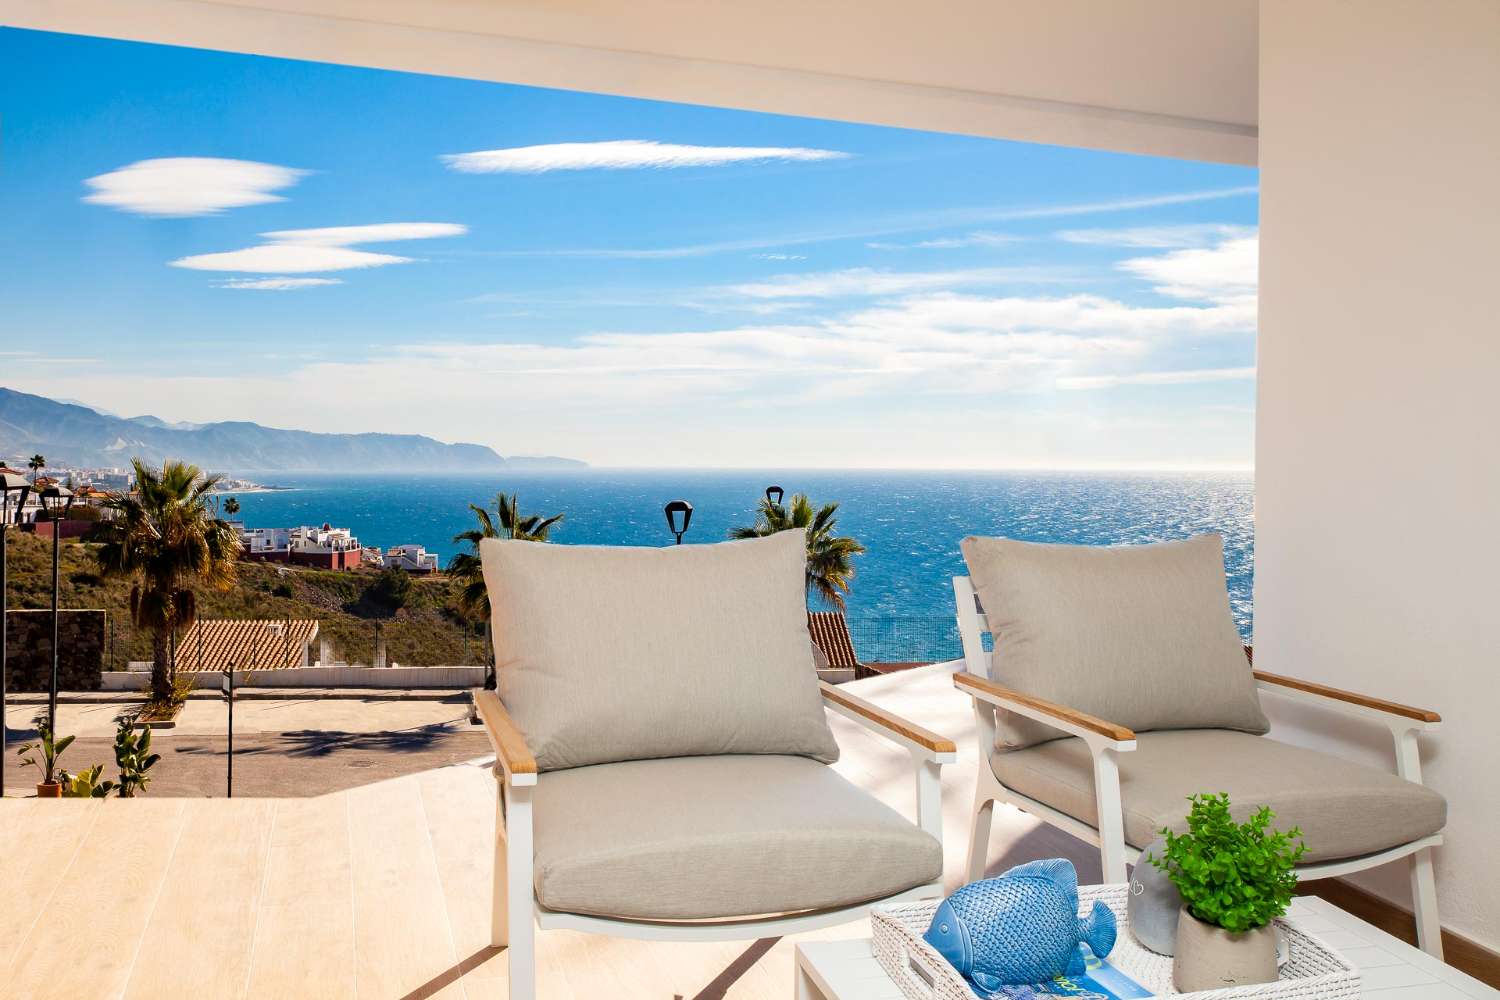 Penthouse avec terrasse immense avec vue imprenable sur la mer à vendre sur la côte torrox